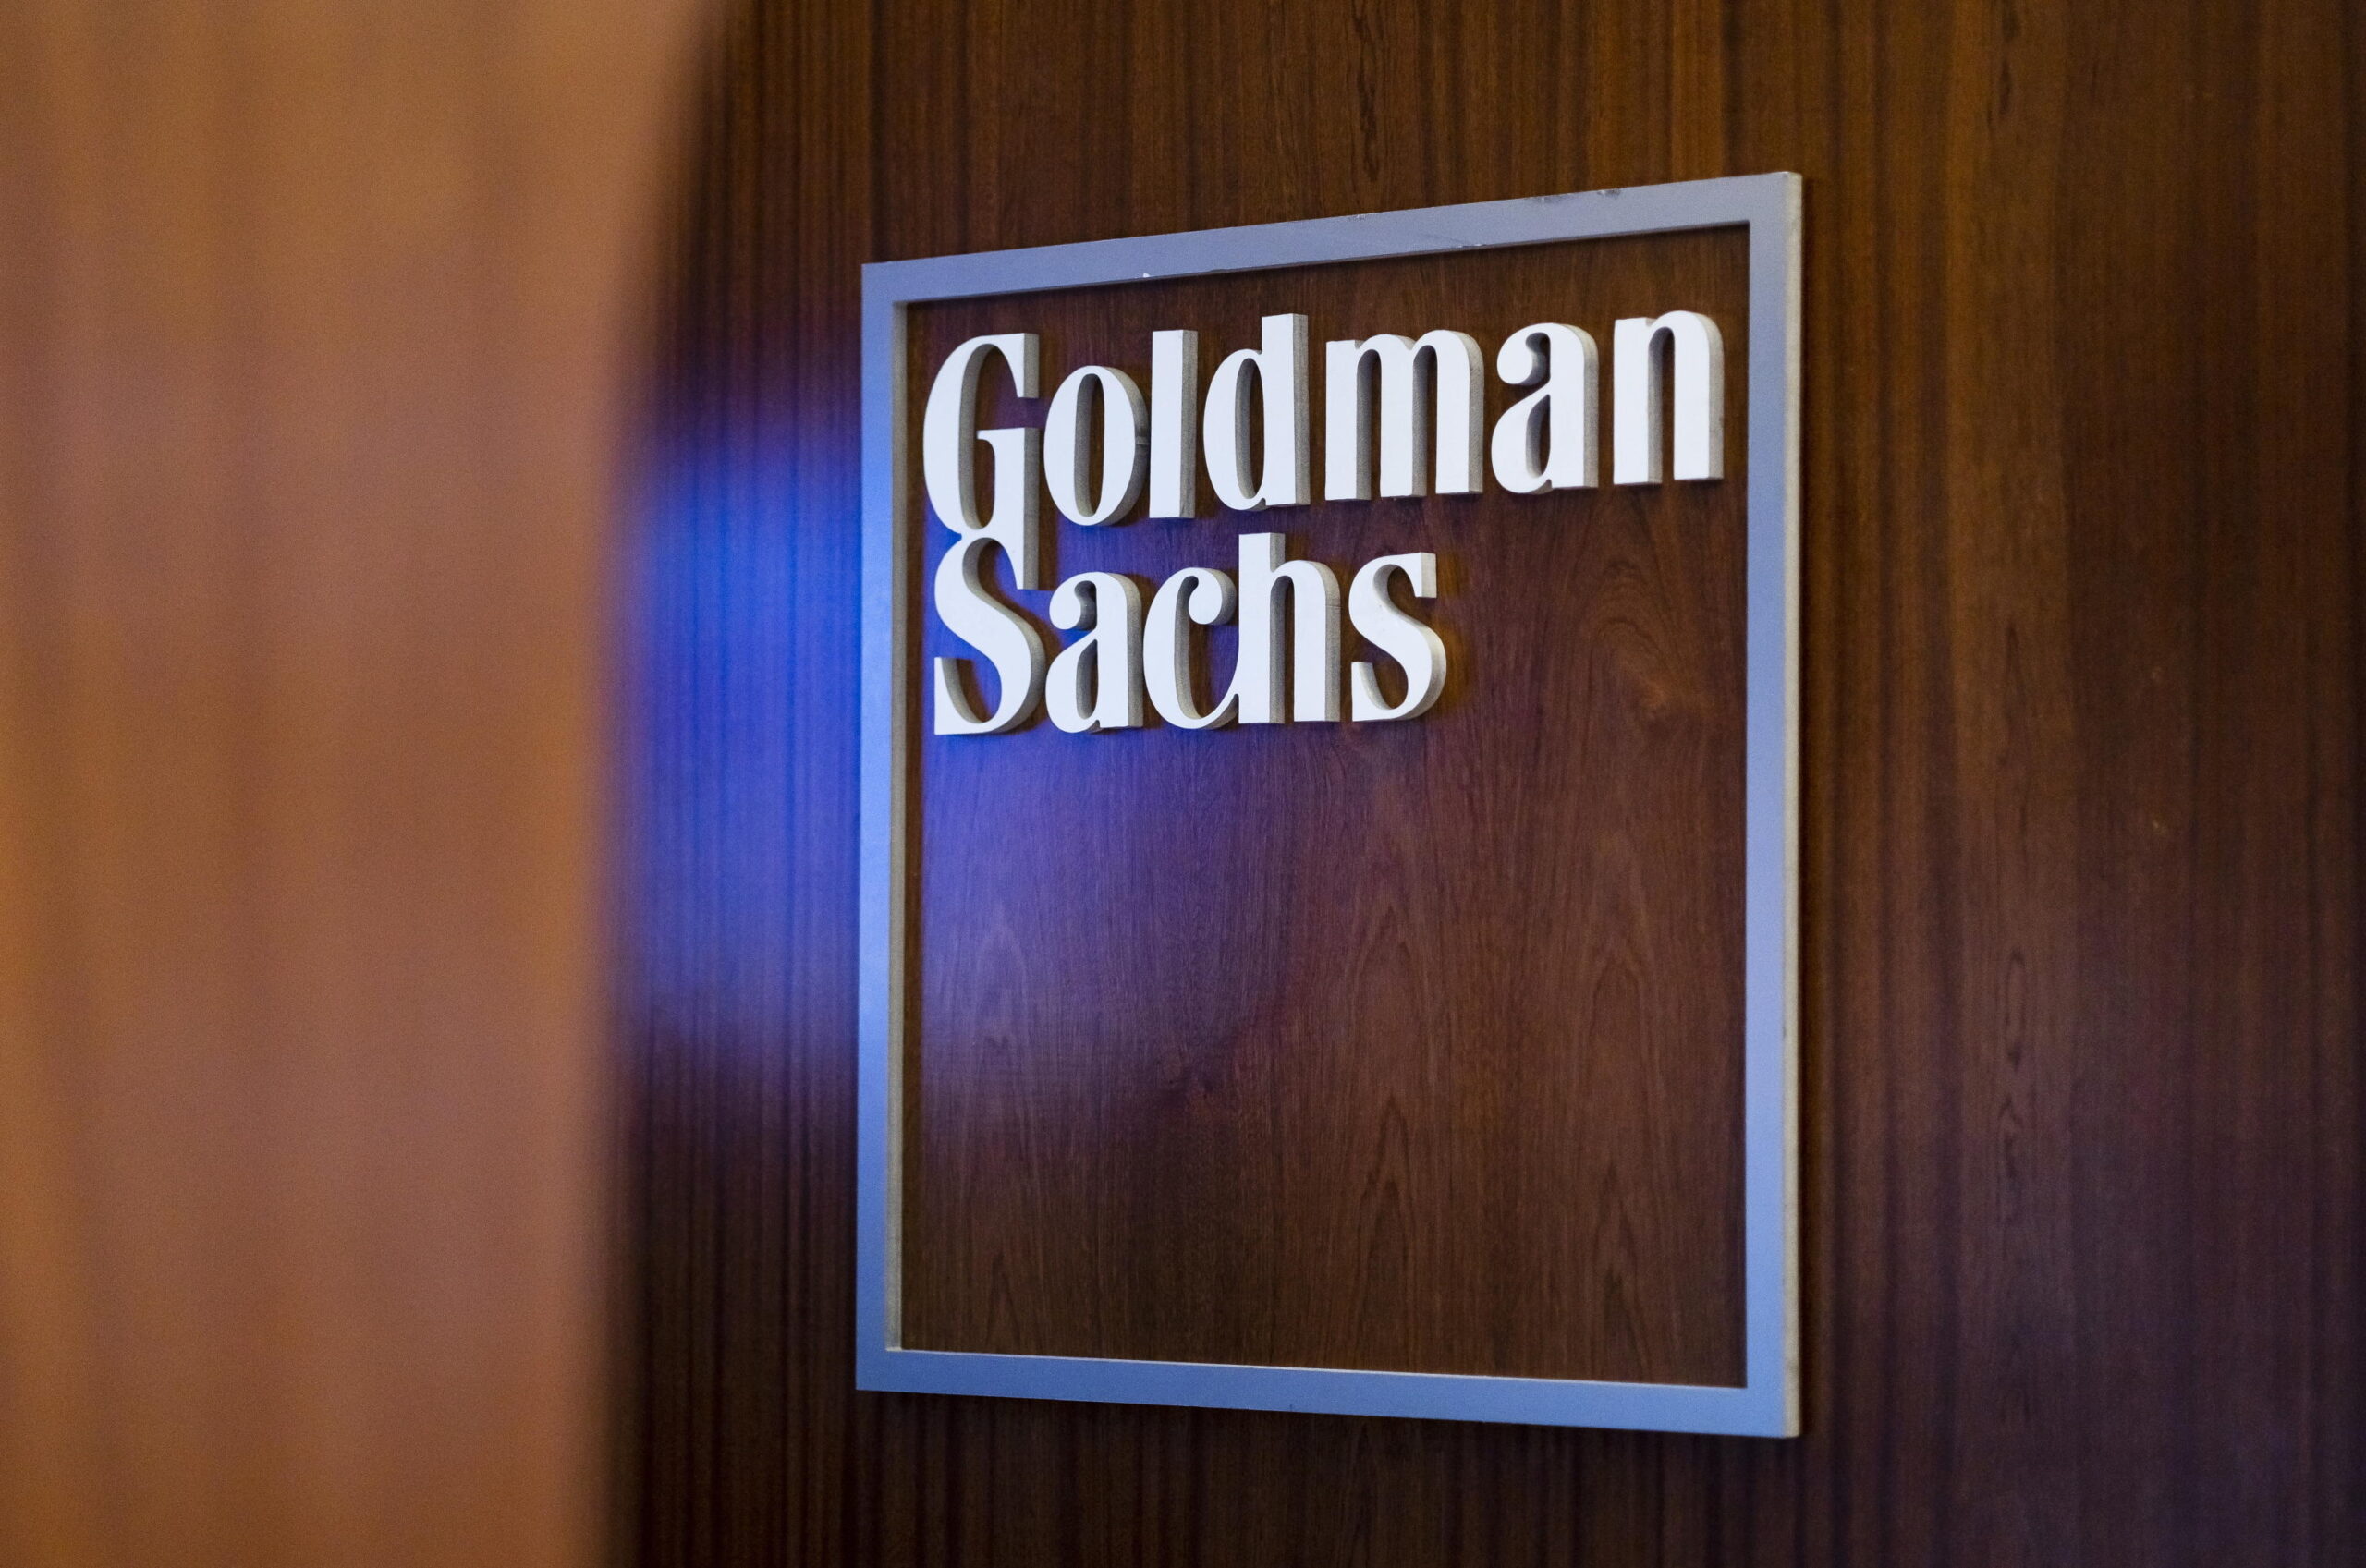 Goldman Sachs paga 215 milioni di dollari per risolvere una causa contro la discriminazione di genere